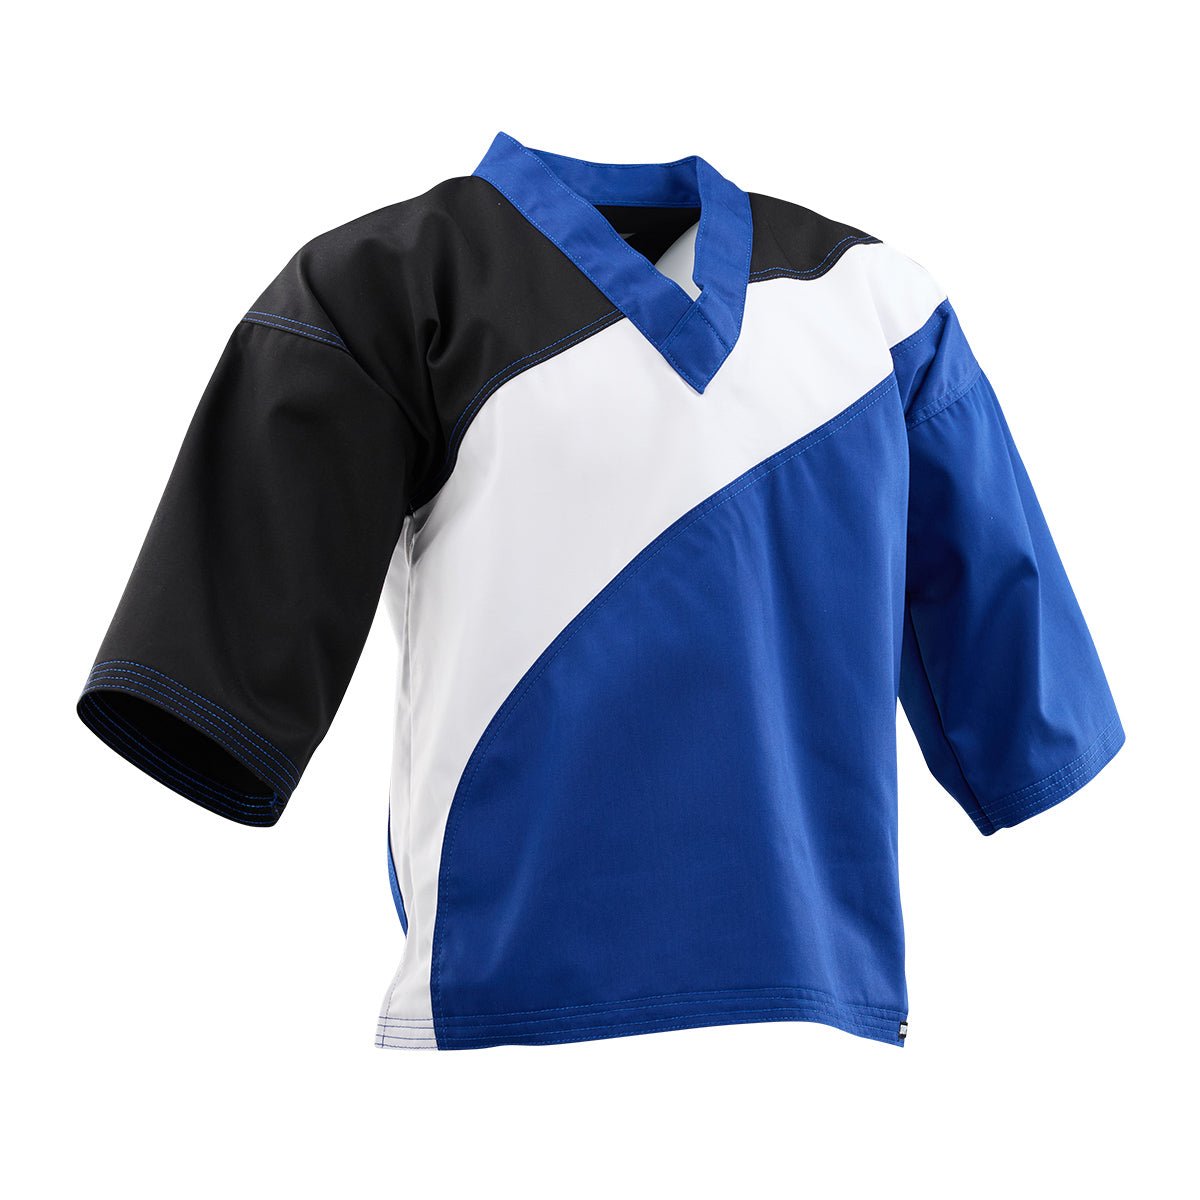 Tri-Color Diagonal Program Uniform Top Black/Blue/White